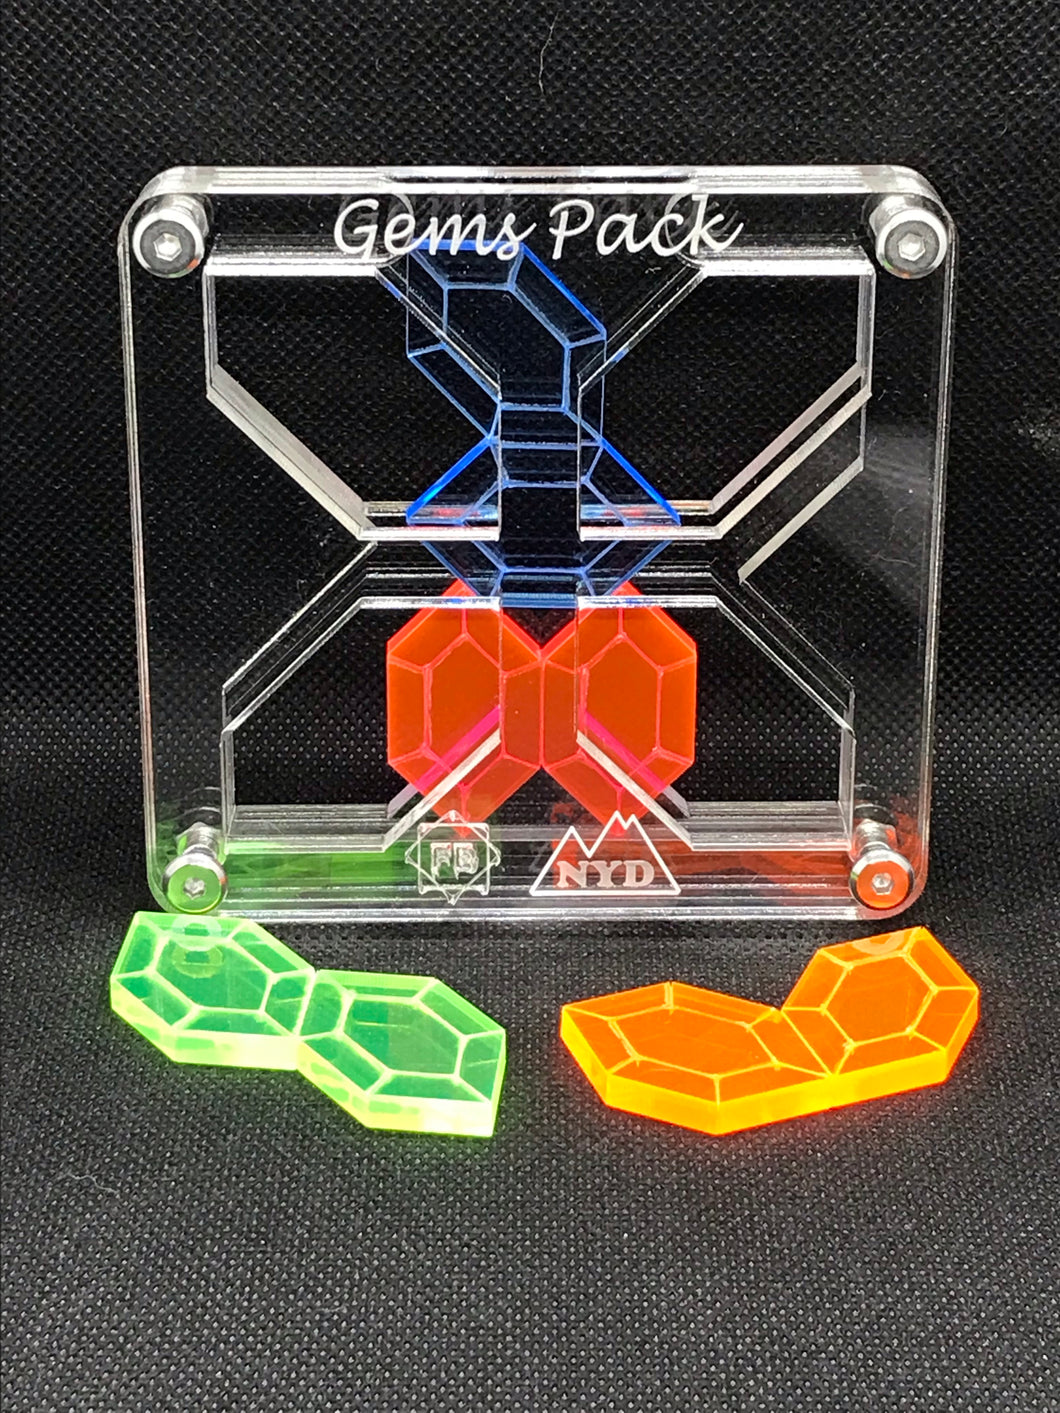 GemsPack